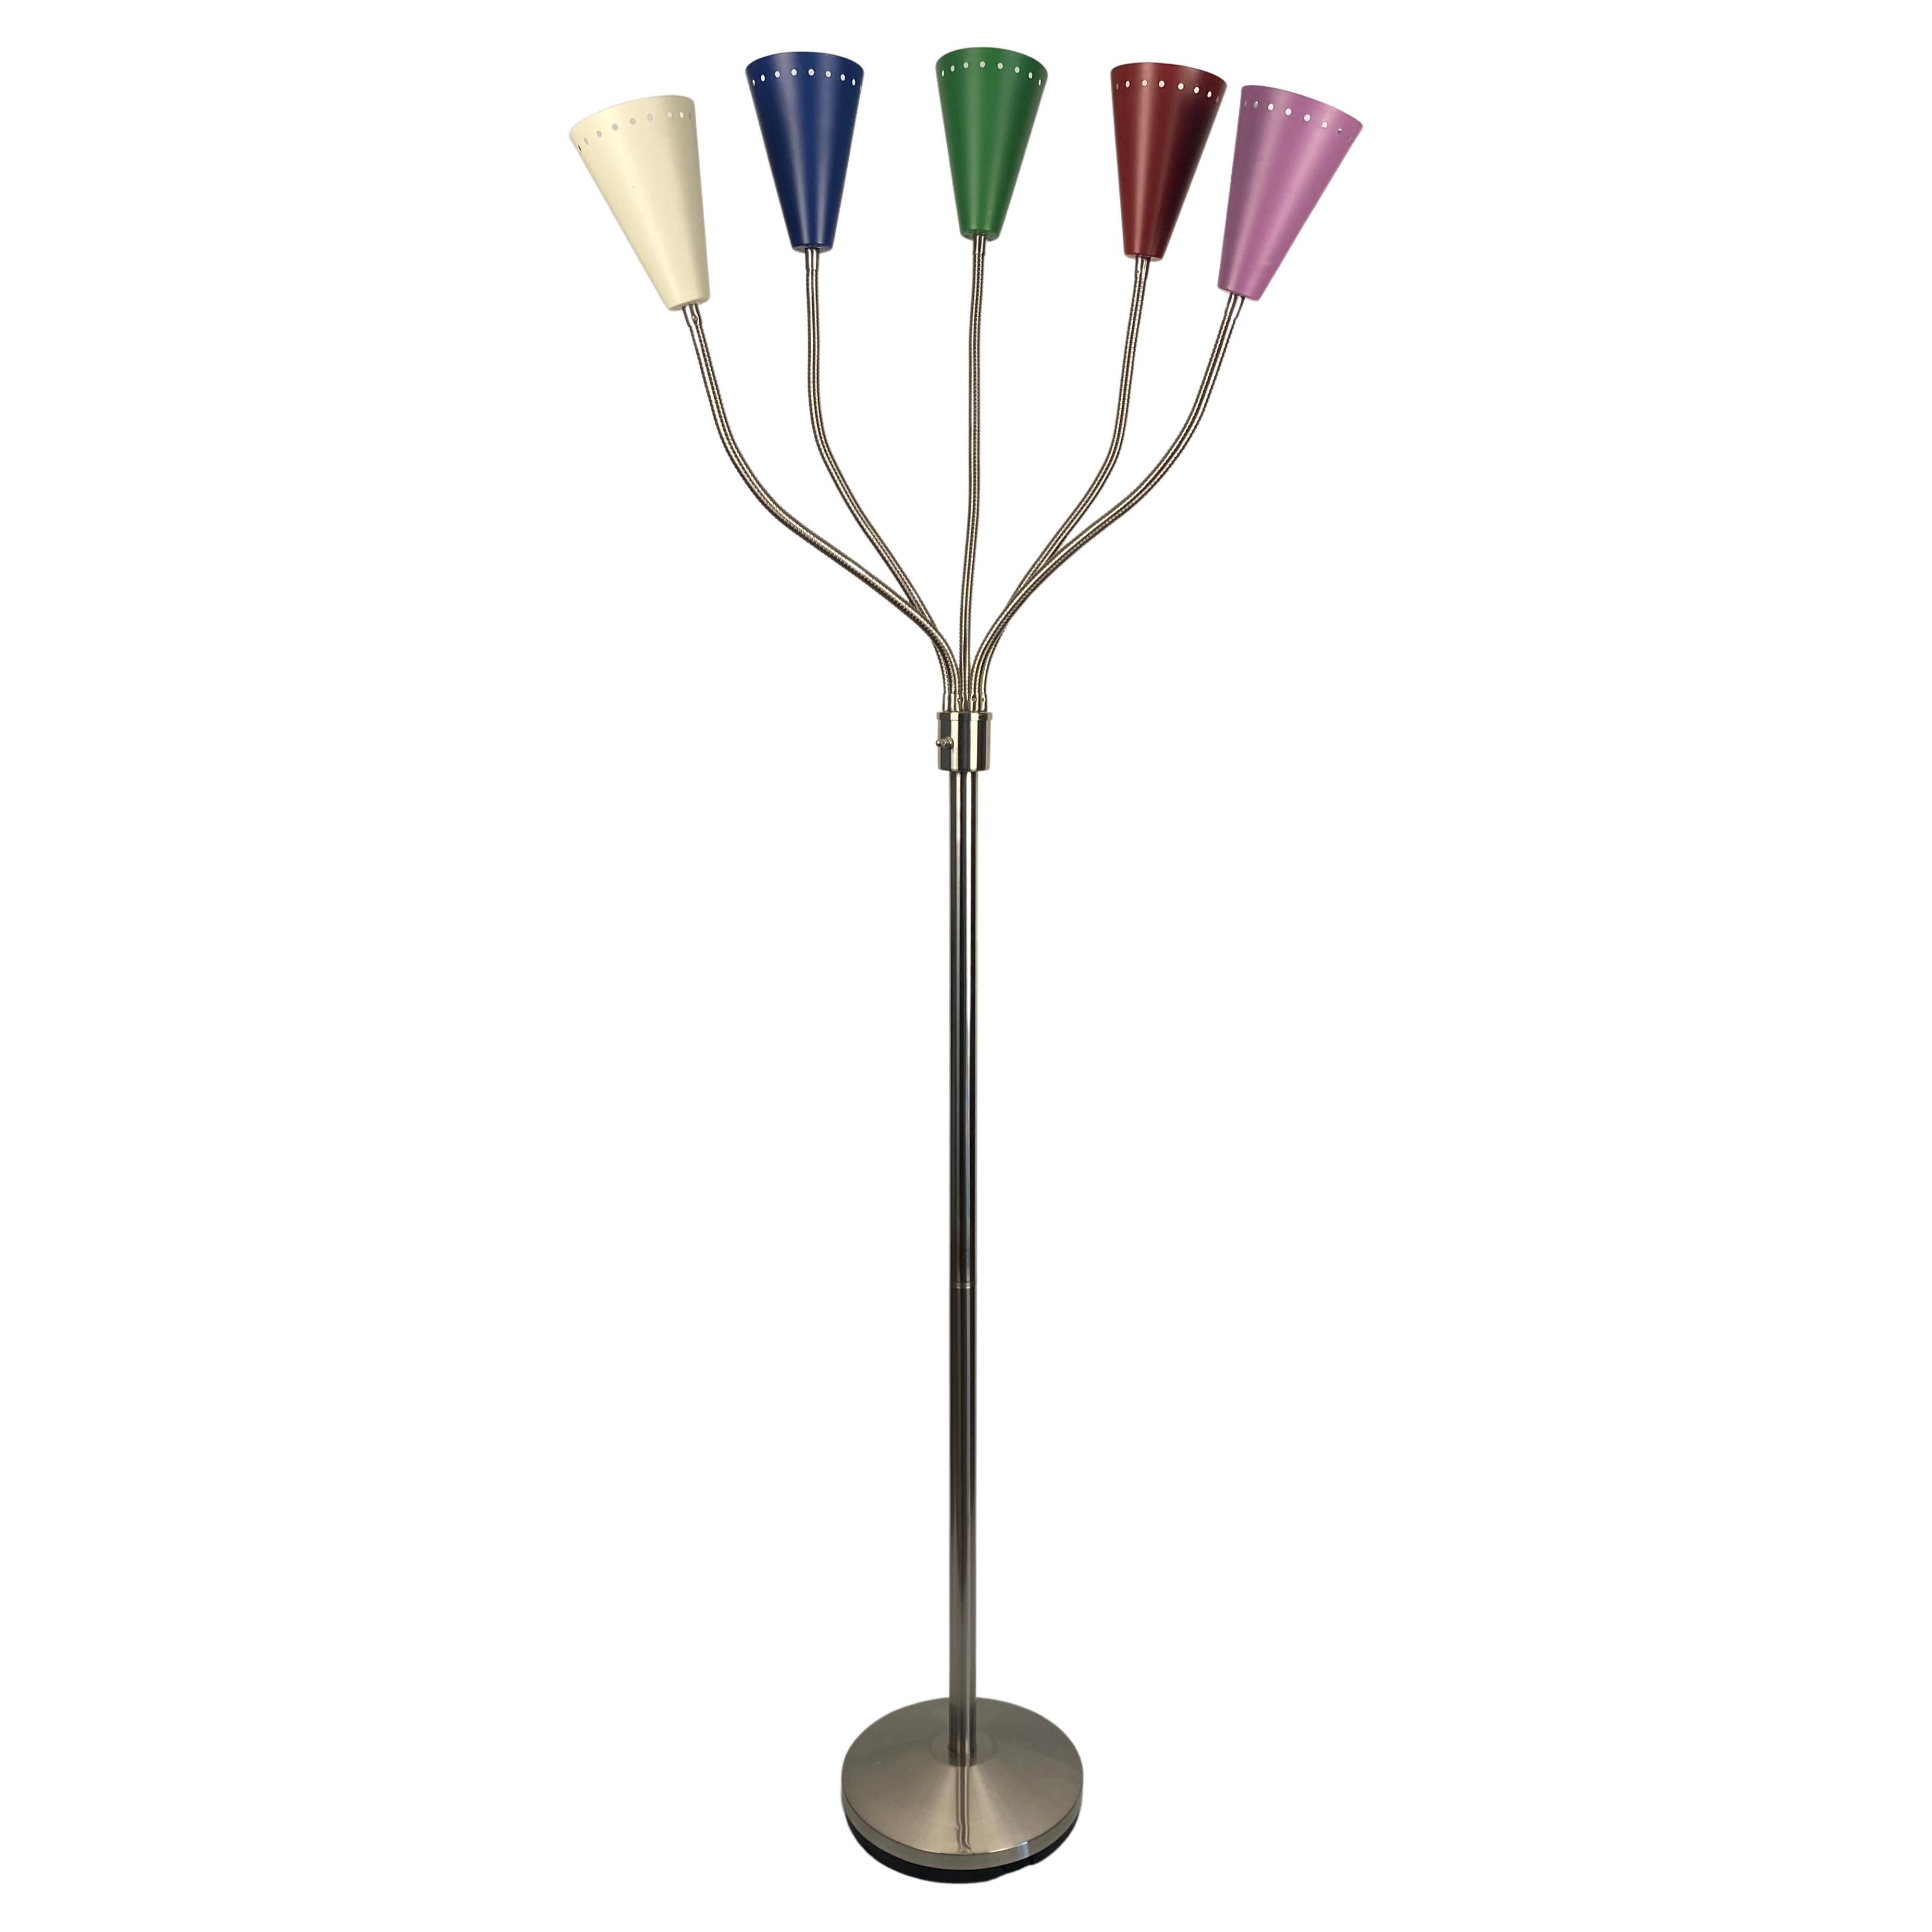 Italian Stilnovo Style Midcentury 5 Arm Floor Lamp